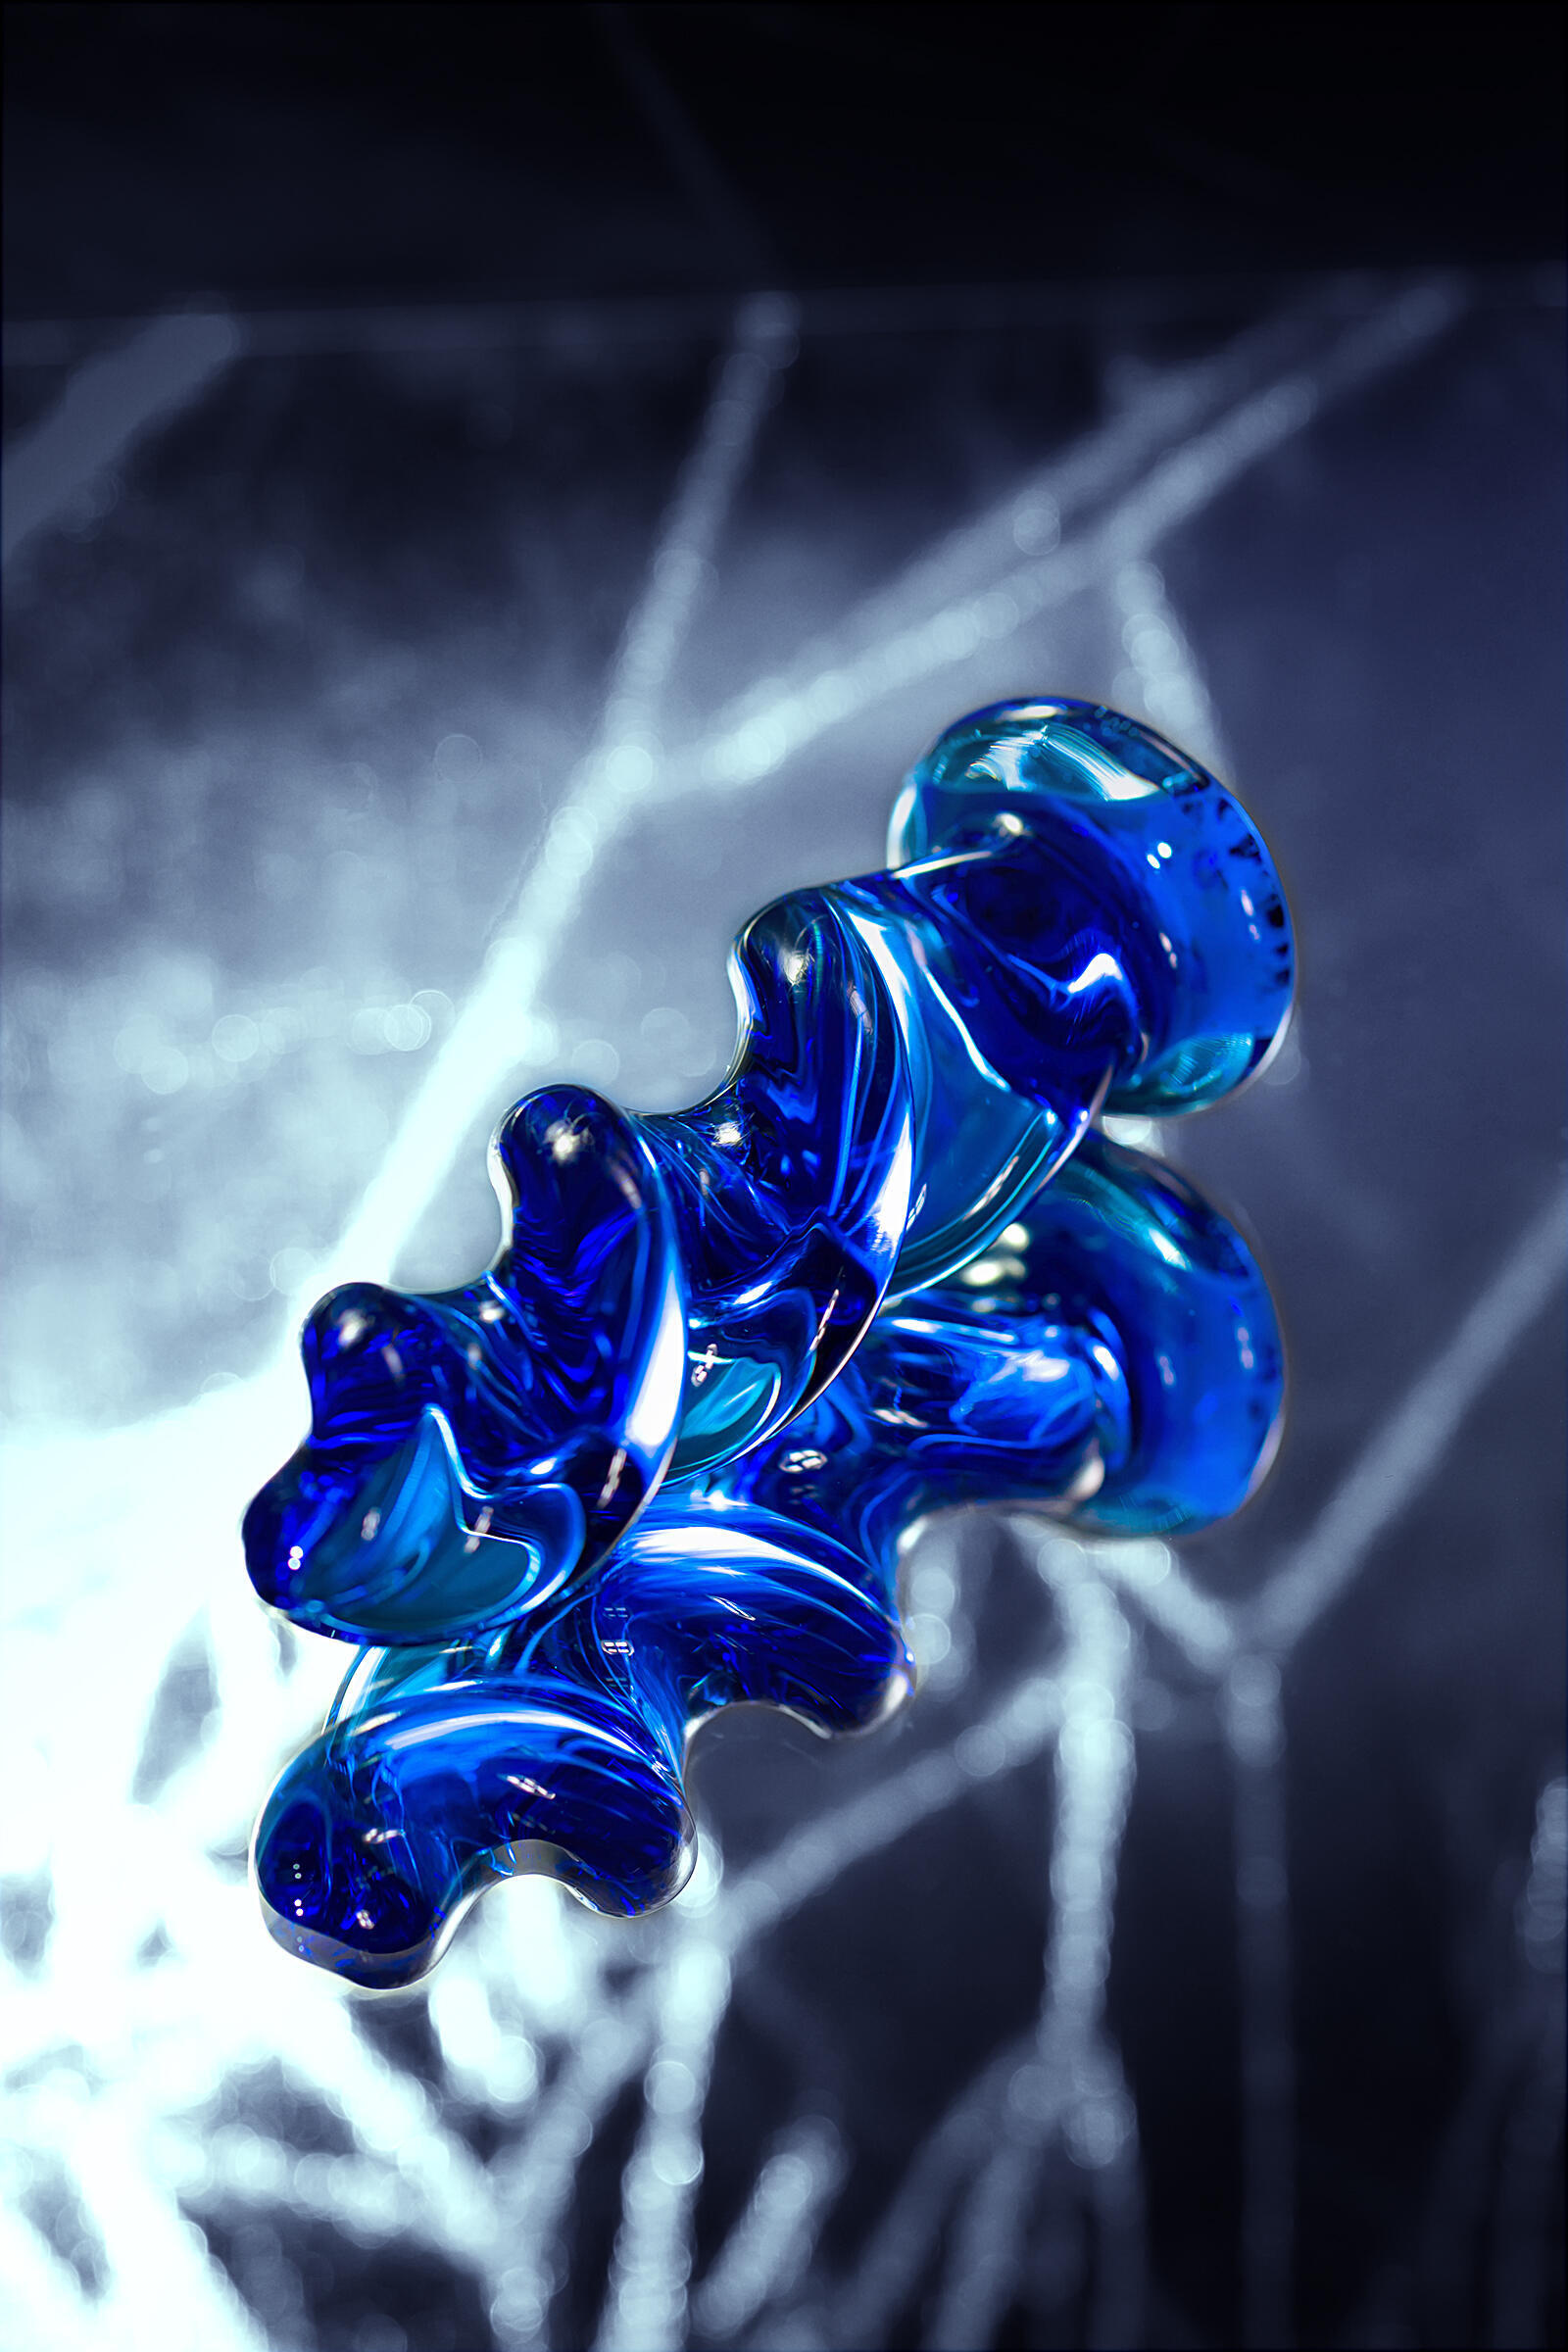 Анальная ёлочка Sexus Glass, синяя